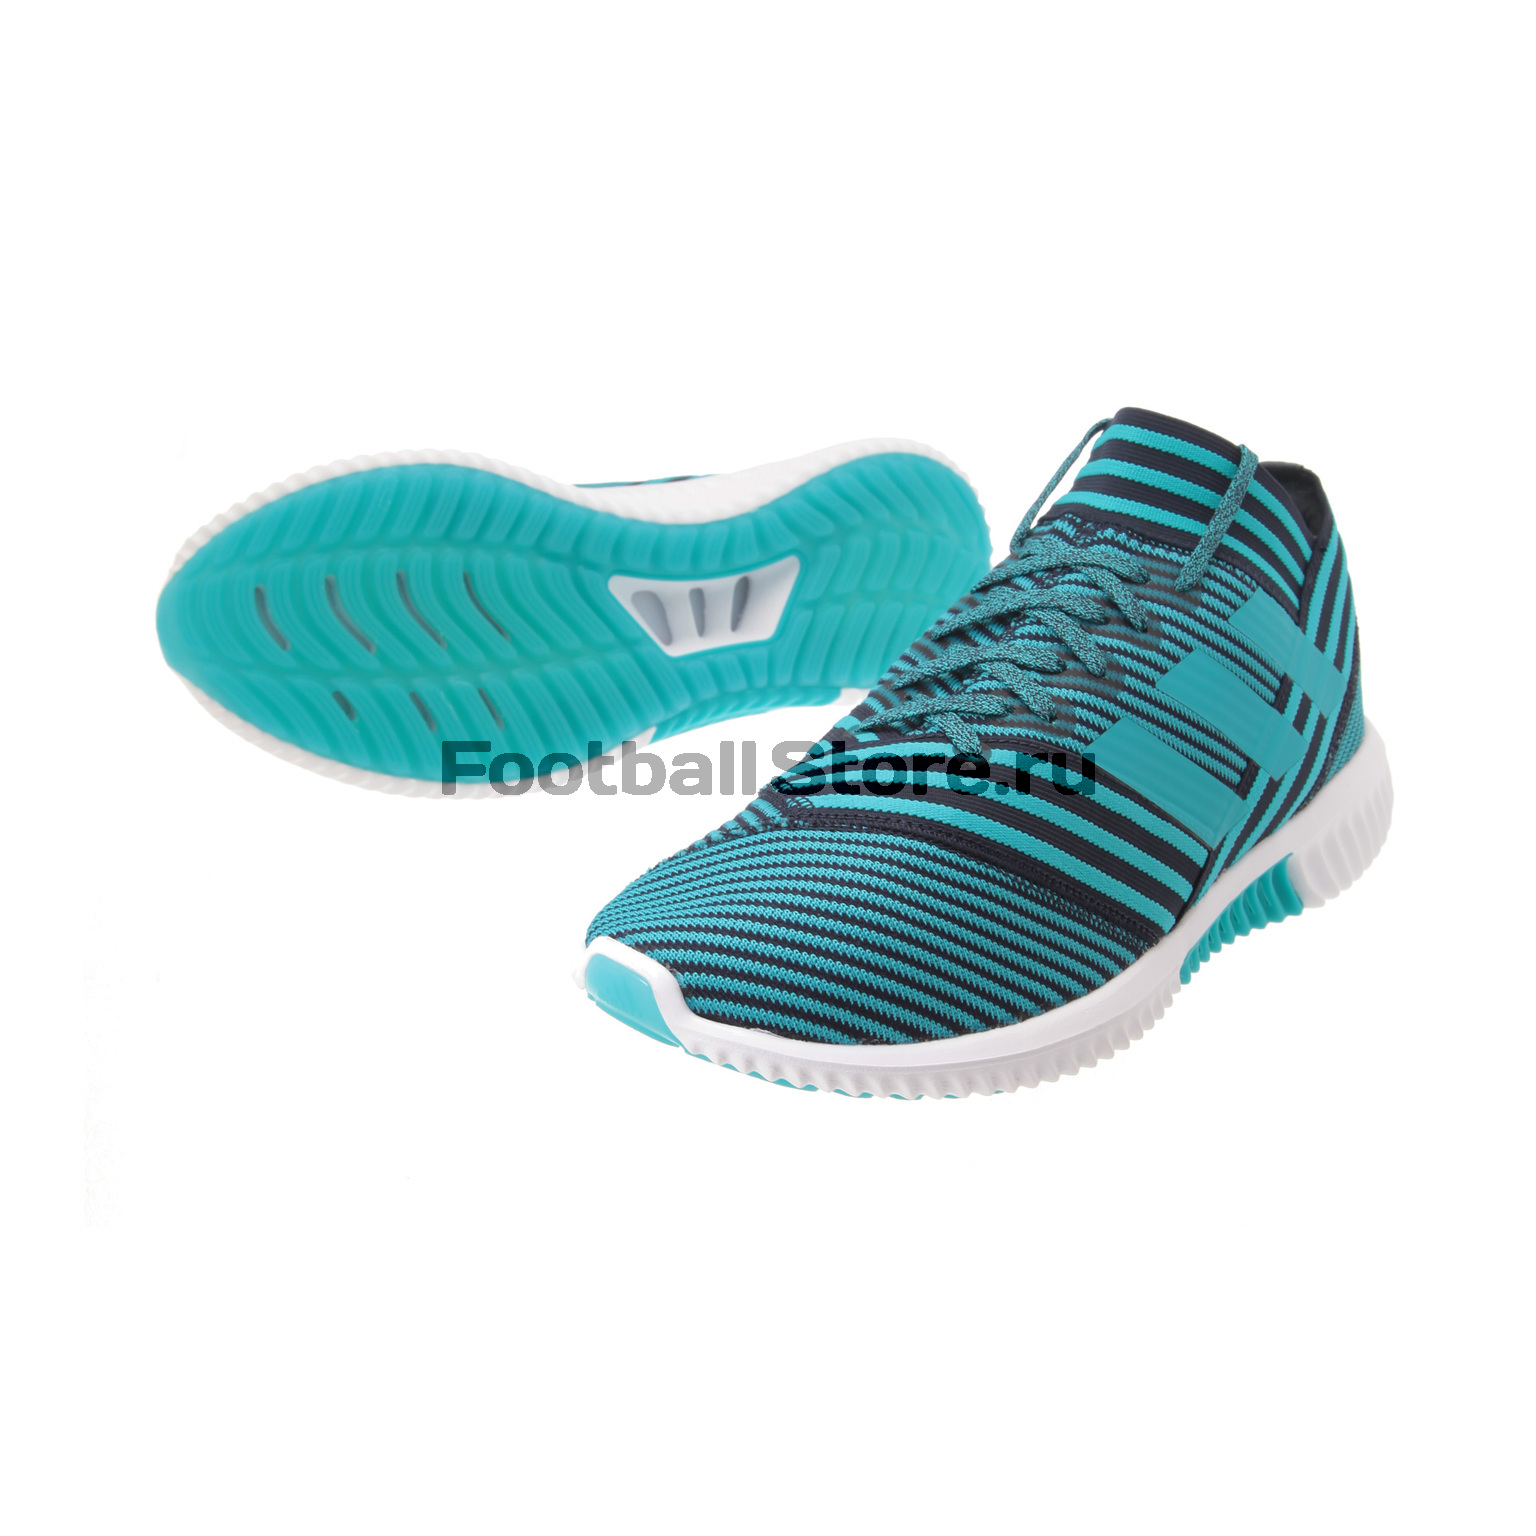 Футбольная обувь Adidas Nemeziz Tango 17.1 TR BY2306